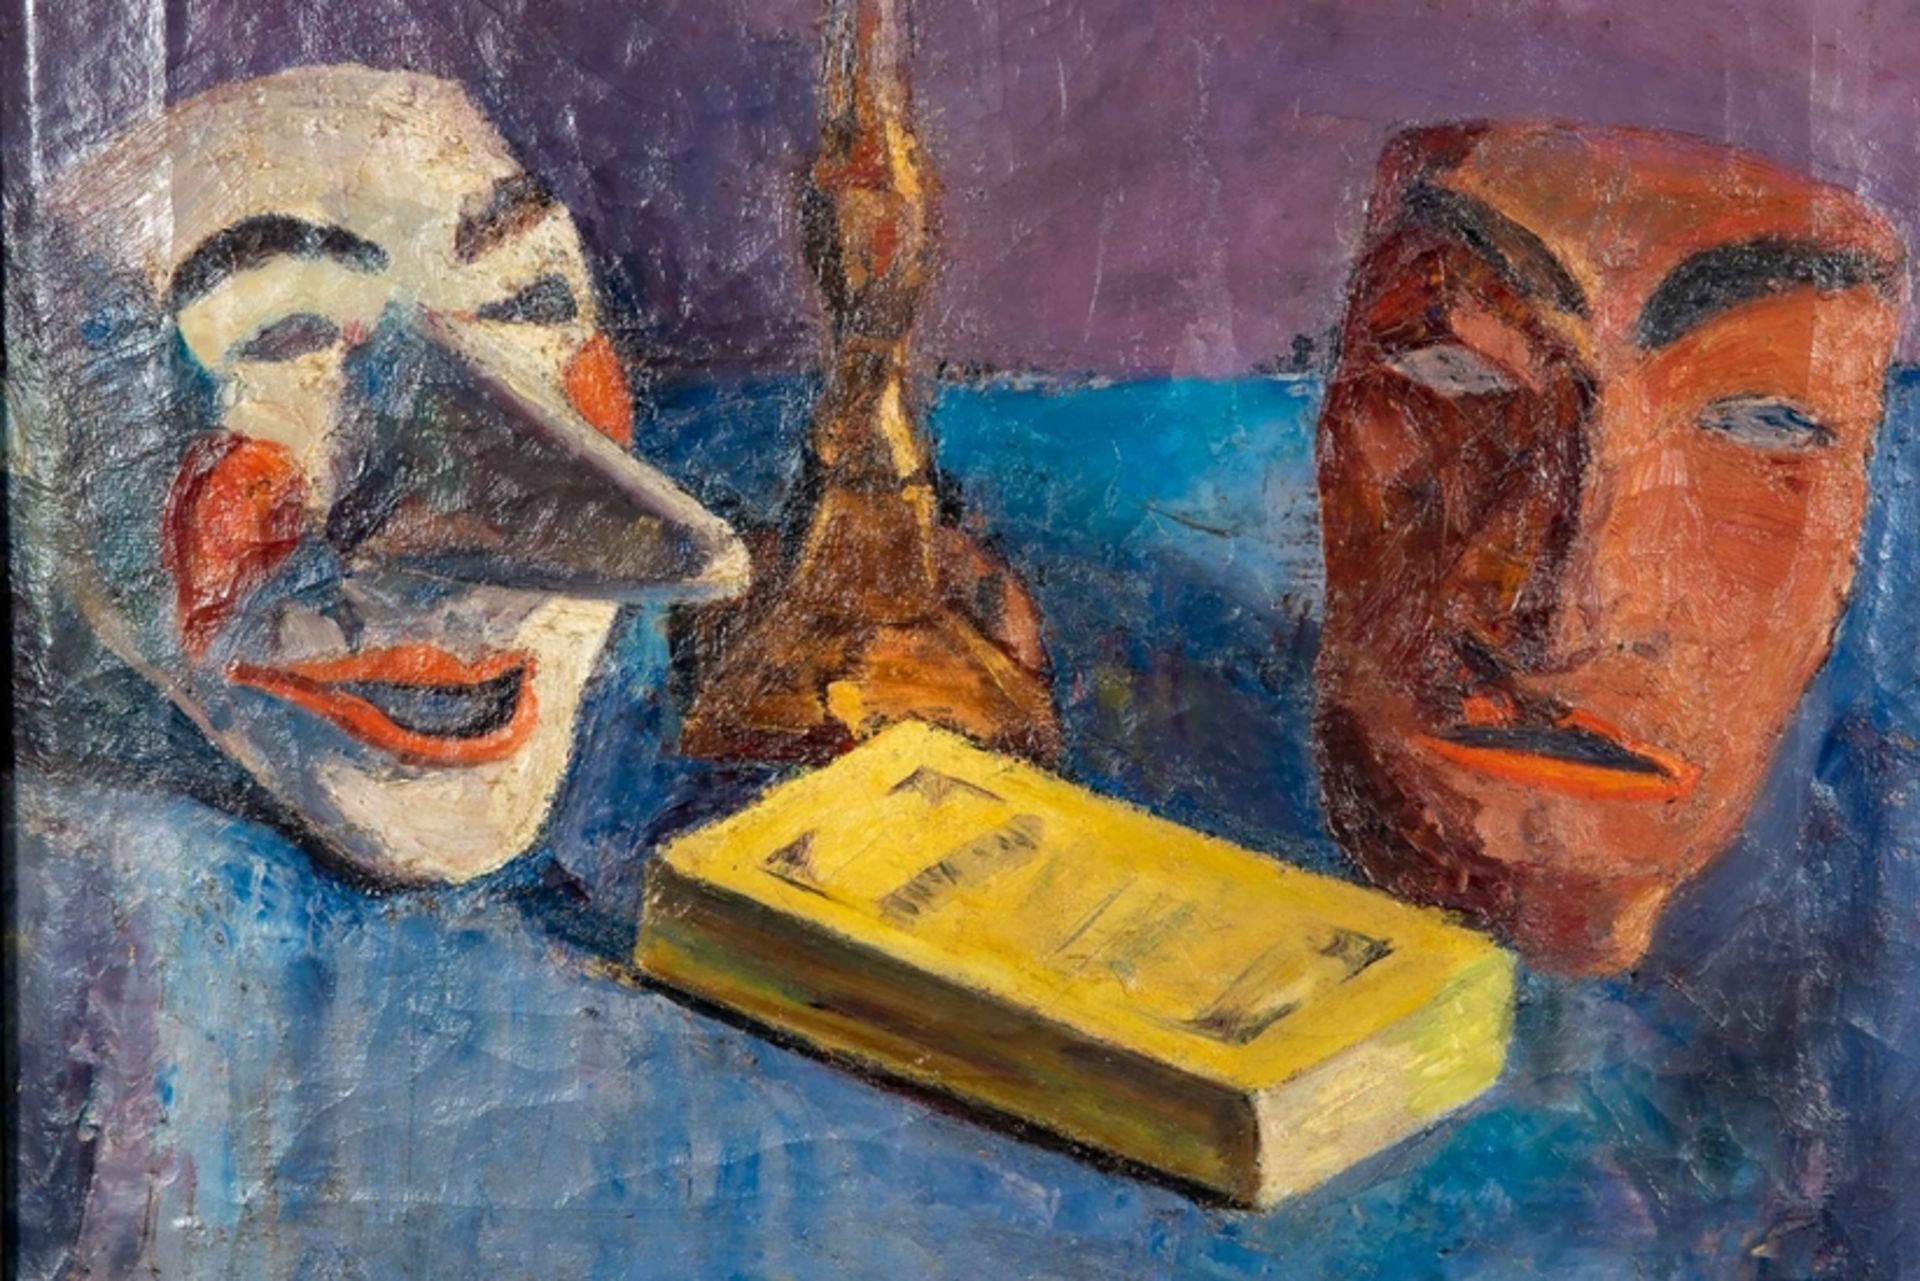 "Stilleben mit Masken" Gemälde Öl auf Leinwand, ca. 57 x 51,5 cm, unsignierte akademische Malerei - Image 8 of 10